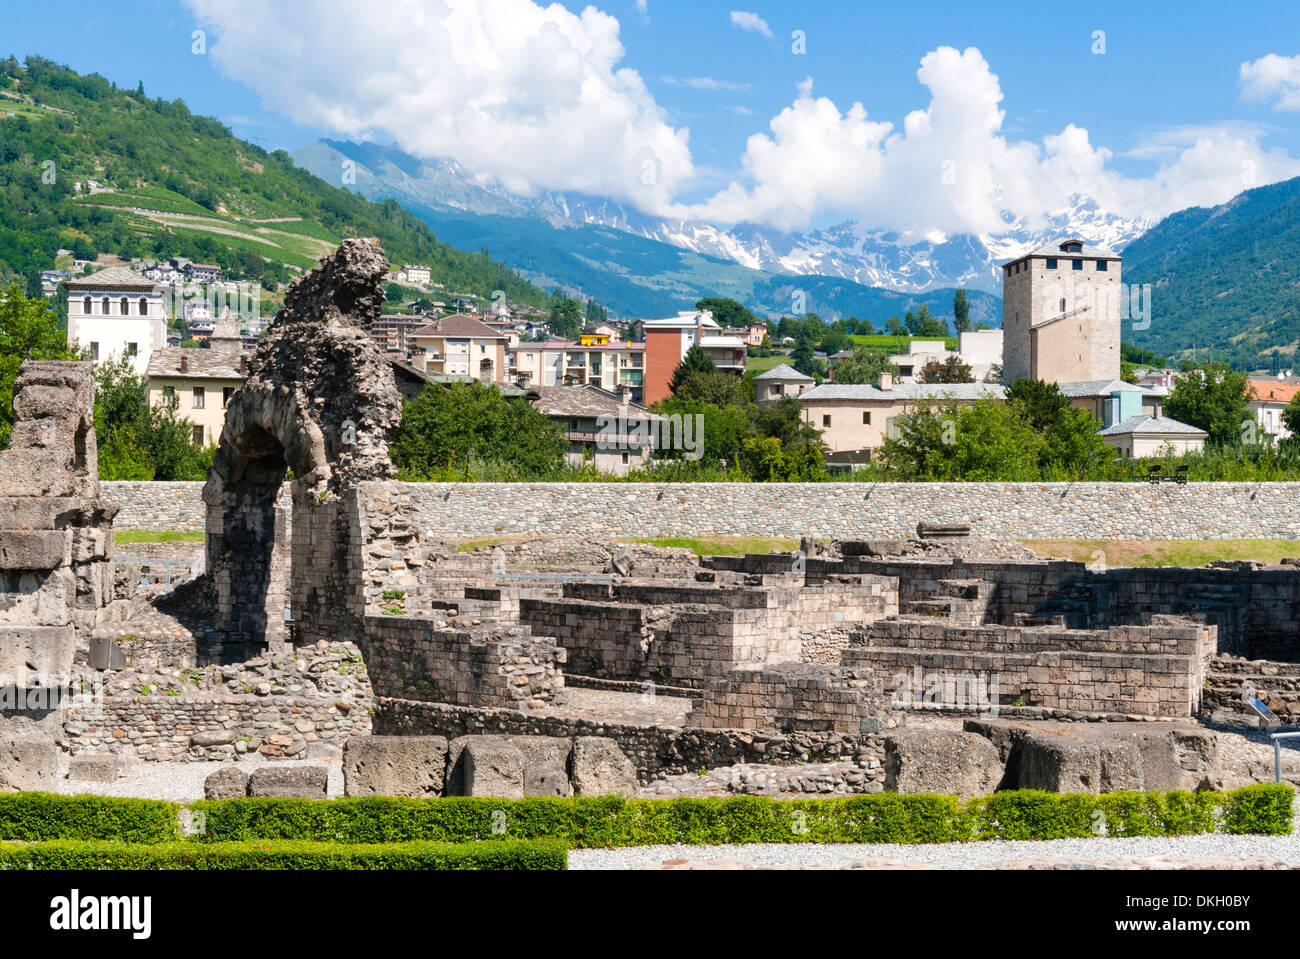 Teatro romano (Teatro Romano), Aosta, Valle d'Aosta, Alpi Italiane, Italia, Europa Foto Stock